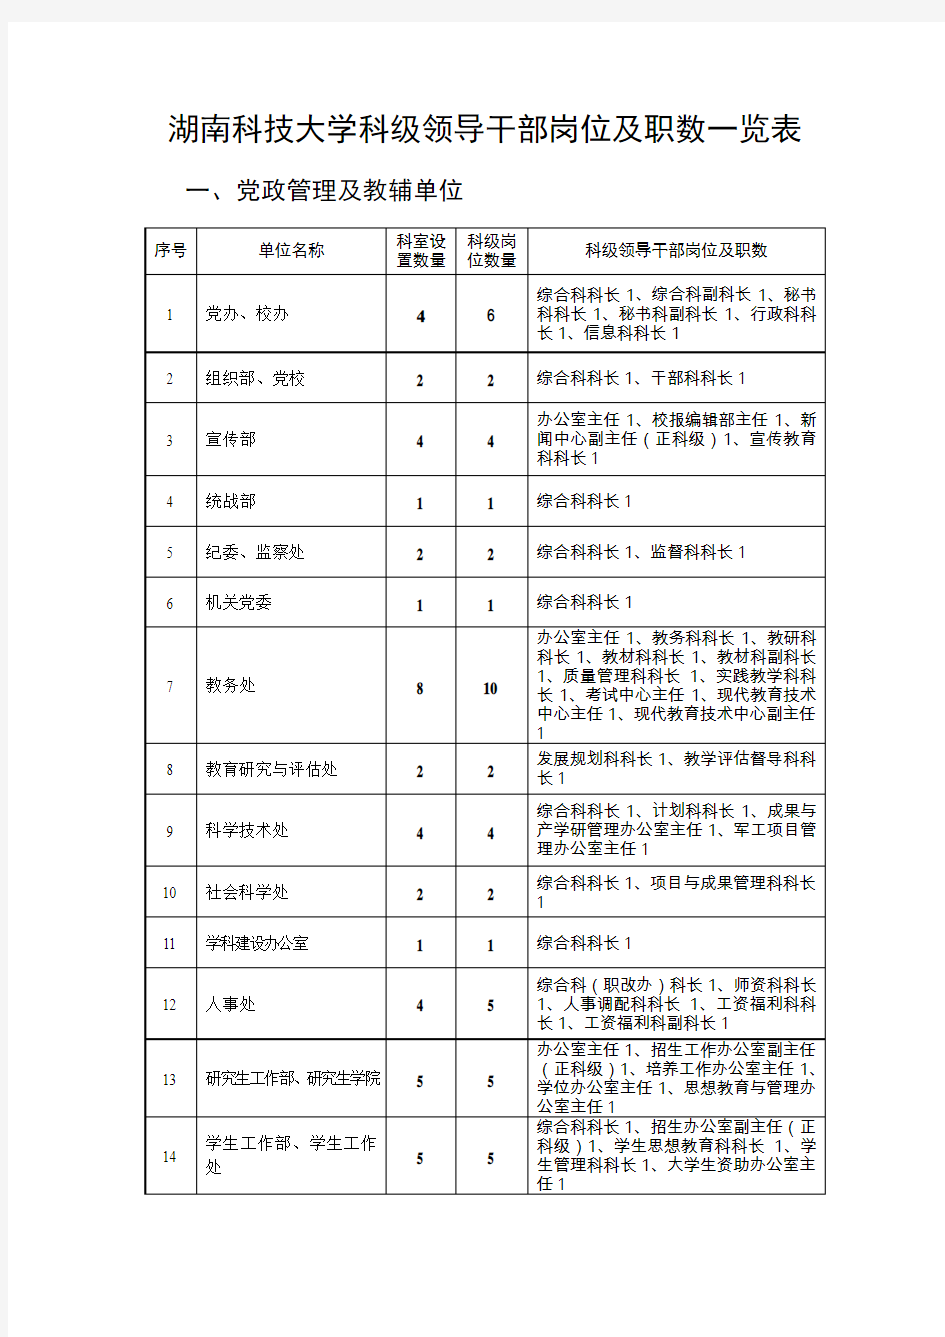 湖南科技大学科级领导干部岗位及职数一览表